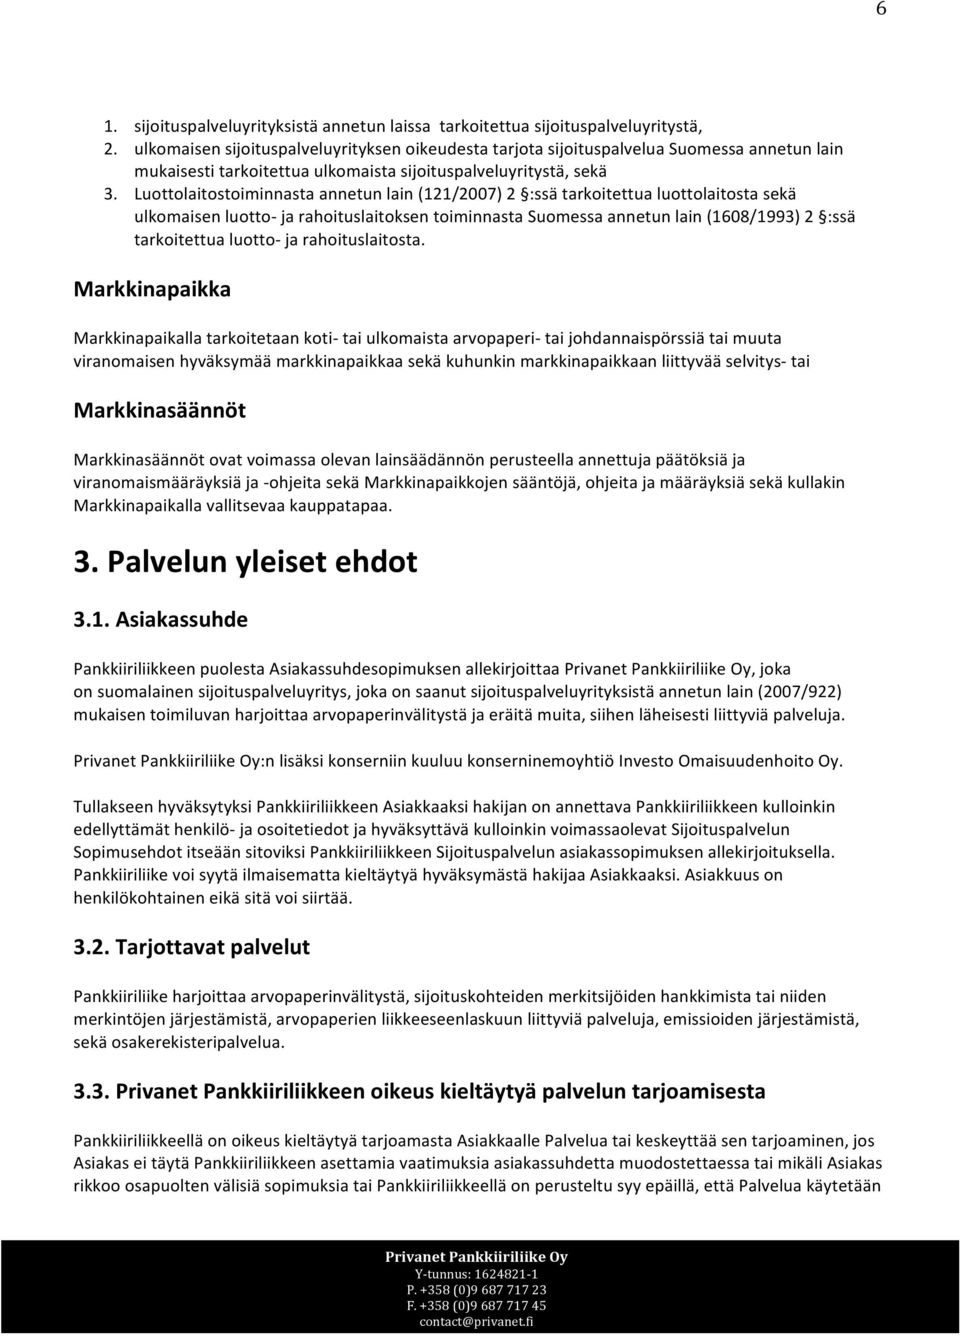 Luottolaitostoiminnasta annetun lain (121/2007) 2 :ssä tarkoitettua luottolaitosta sekä ulkomaisen luotto- ja rahoituslaitoksen toiminnasta Suomessa annetun lain (1608/1993) 2 :ssä tarkoitettua